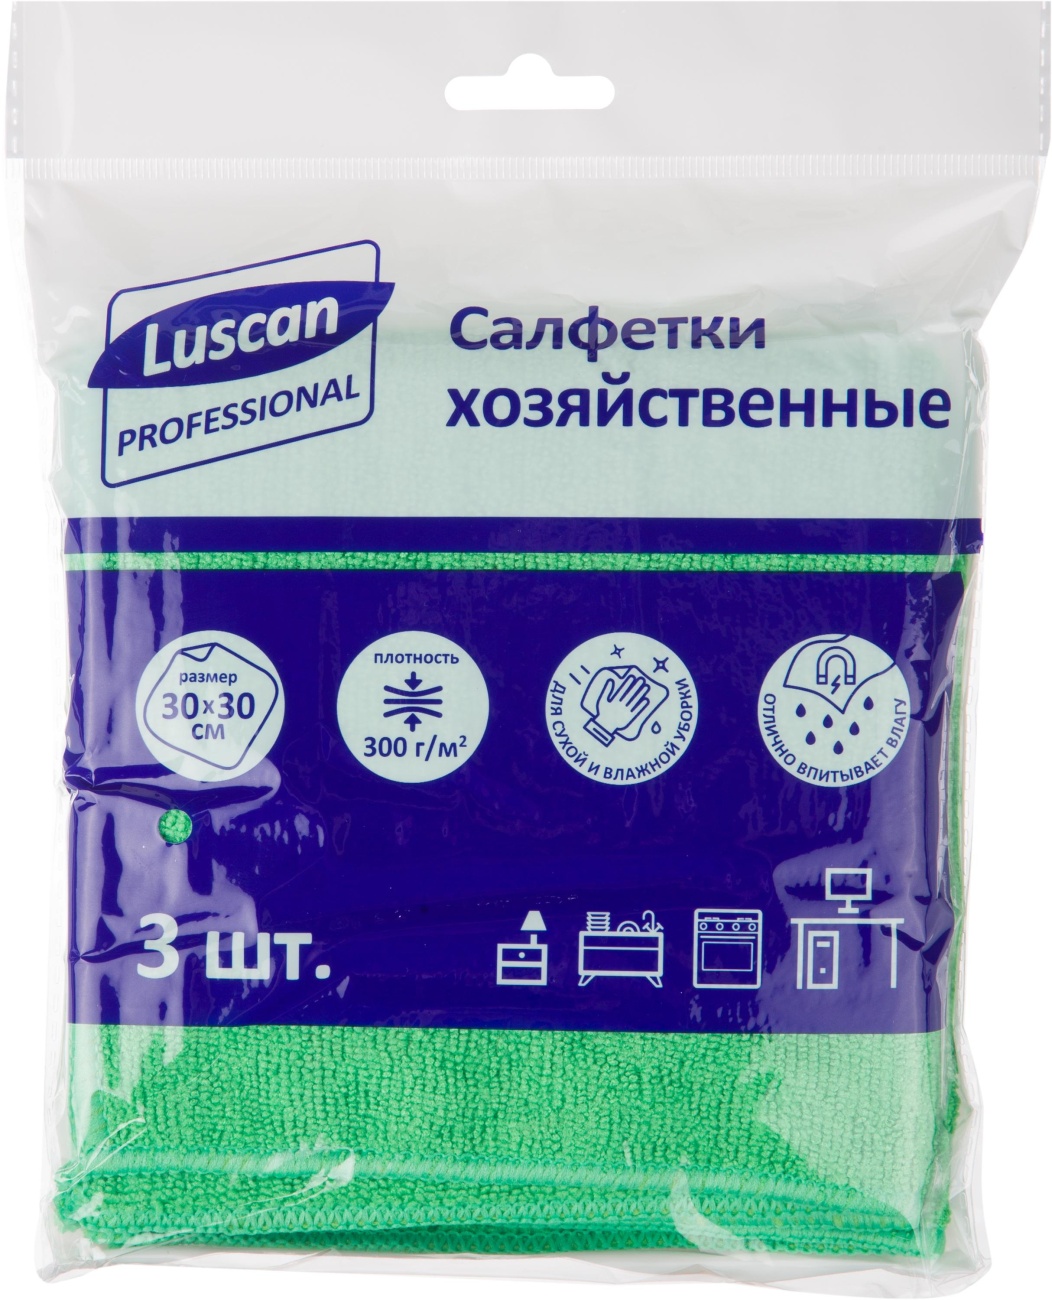 Салфетки хозяйственные Luscan Professional 300г/м2 30х30см 3шт/уп зеленые 1612786 3030X300X3G